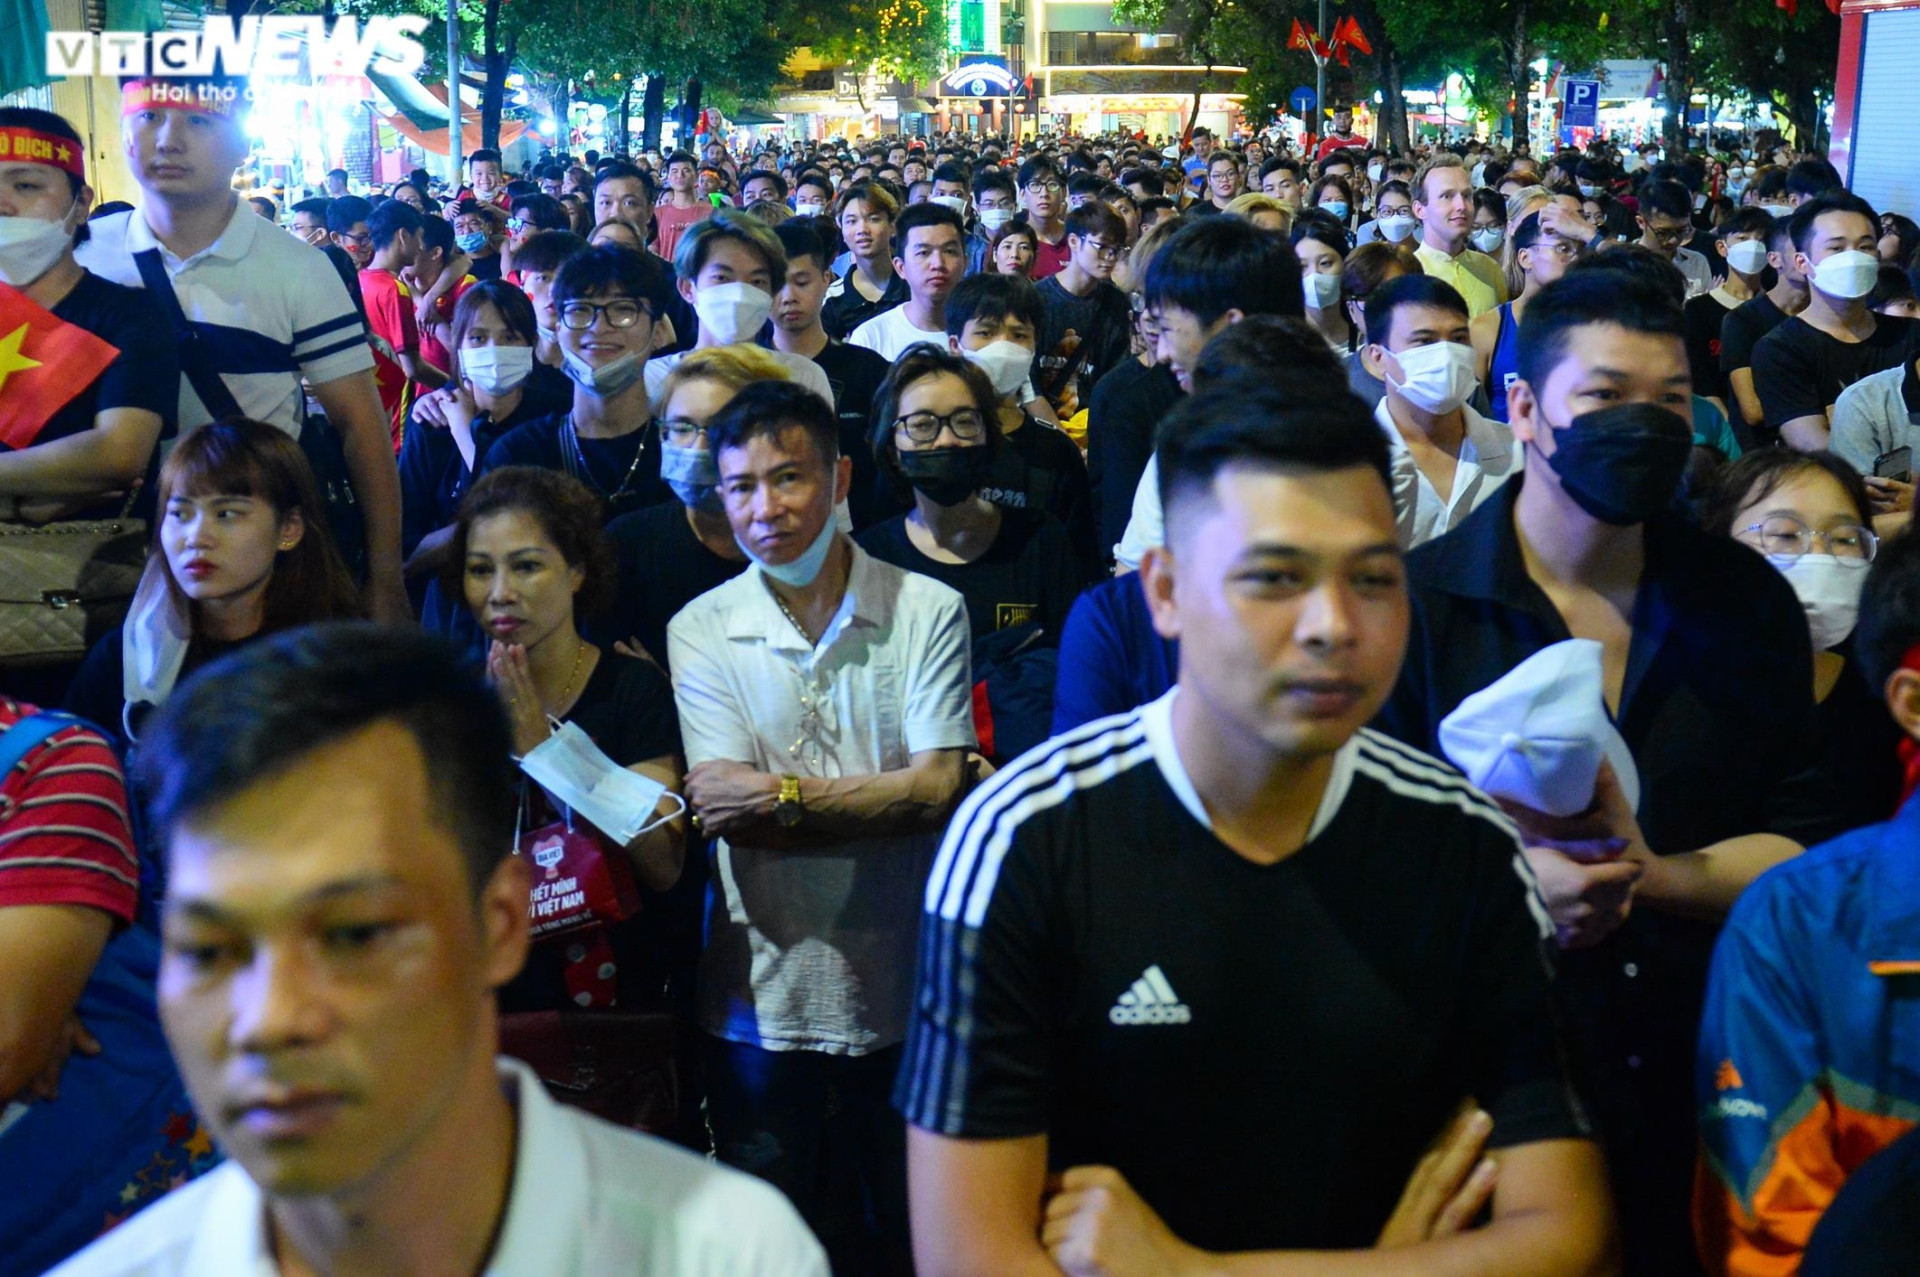 Hết mưa, người dân Hà Nội rủ nhau lên Bờ Hồ xem đội tuyển U23 đá chung kết - 2